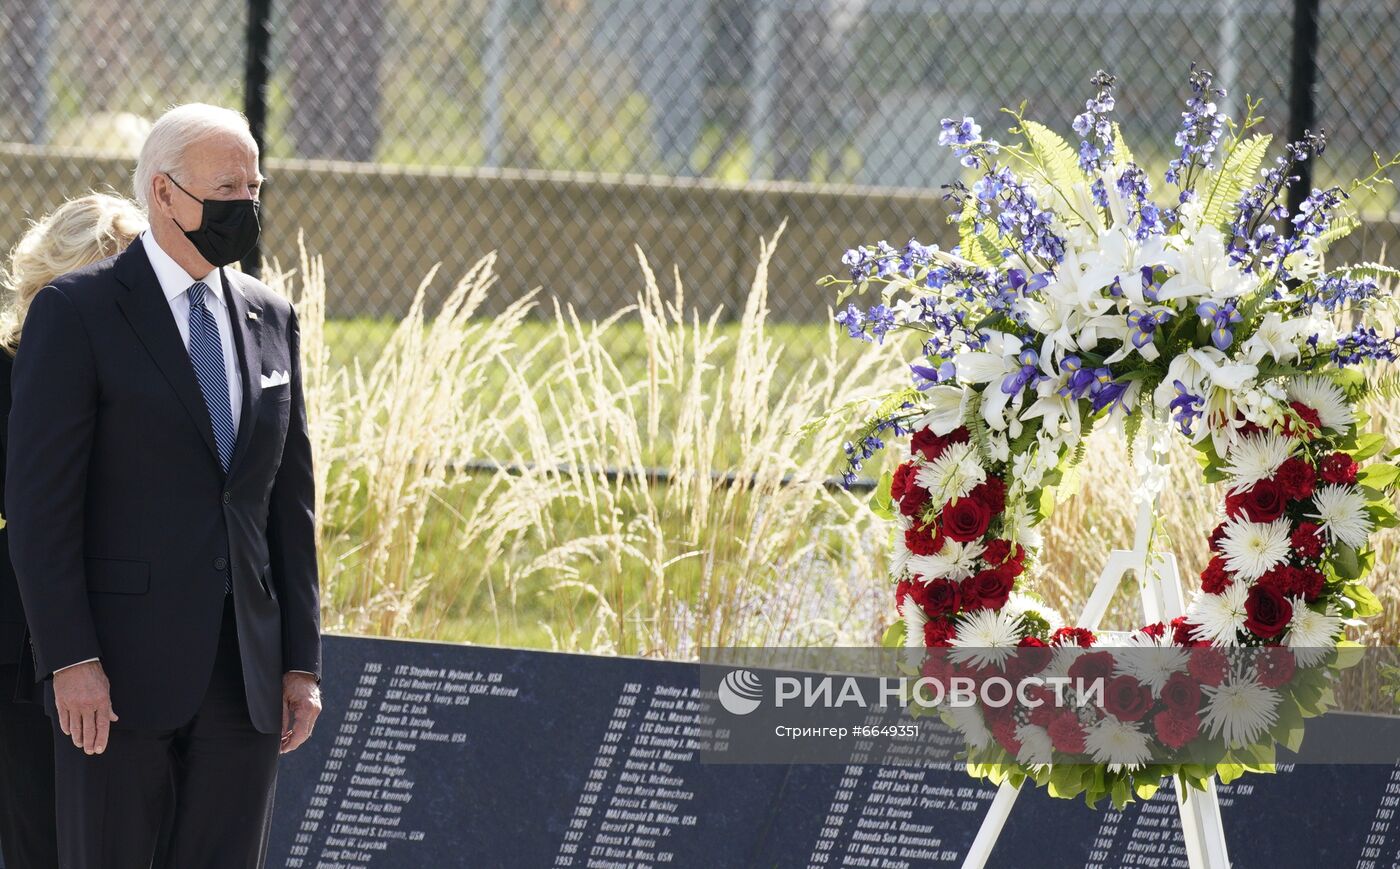 Байден возложил венок у Пентагона в память о жертвах терактов 11 сентября